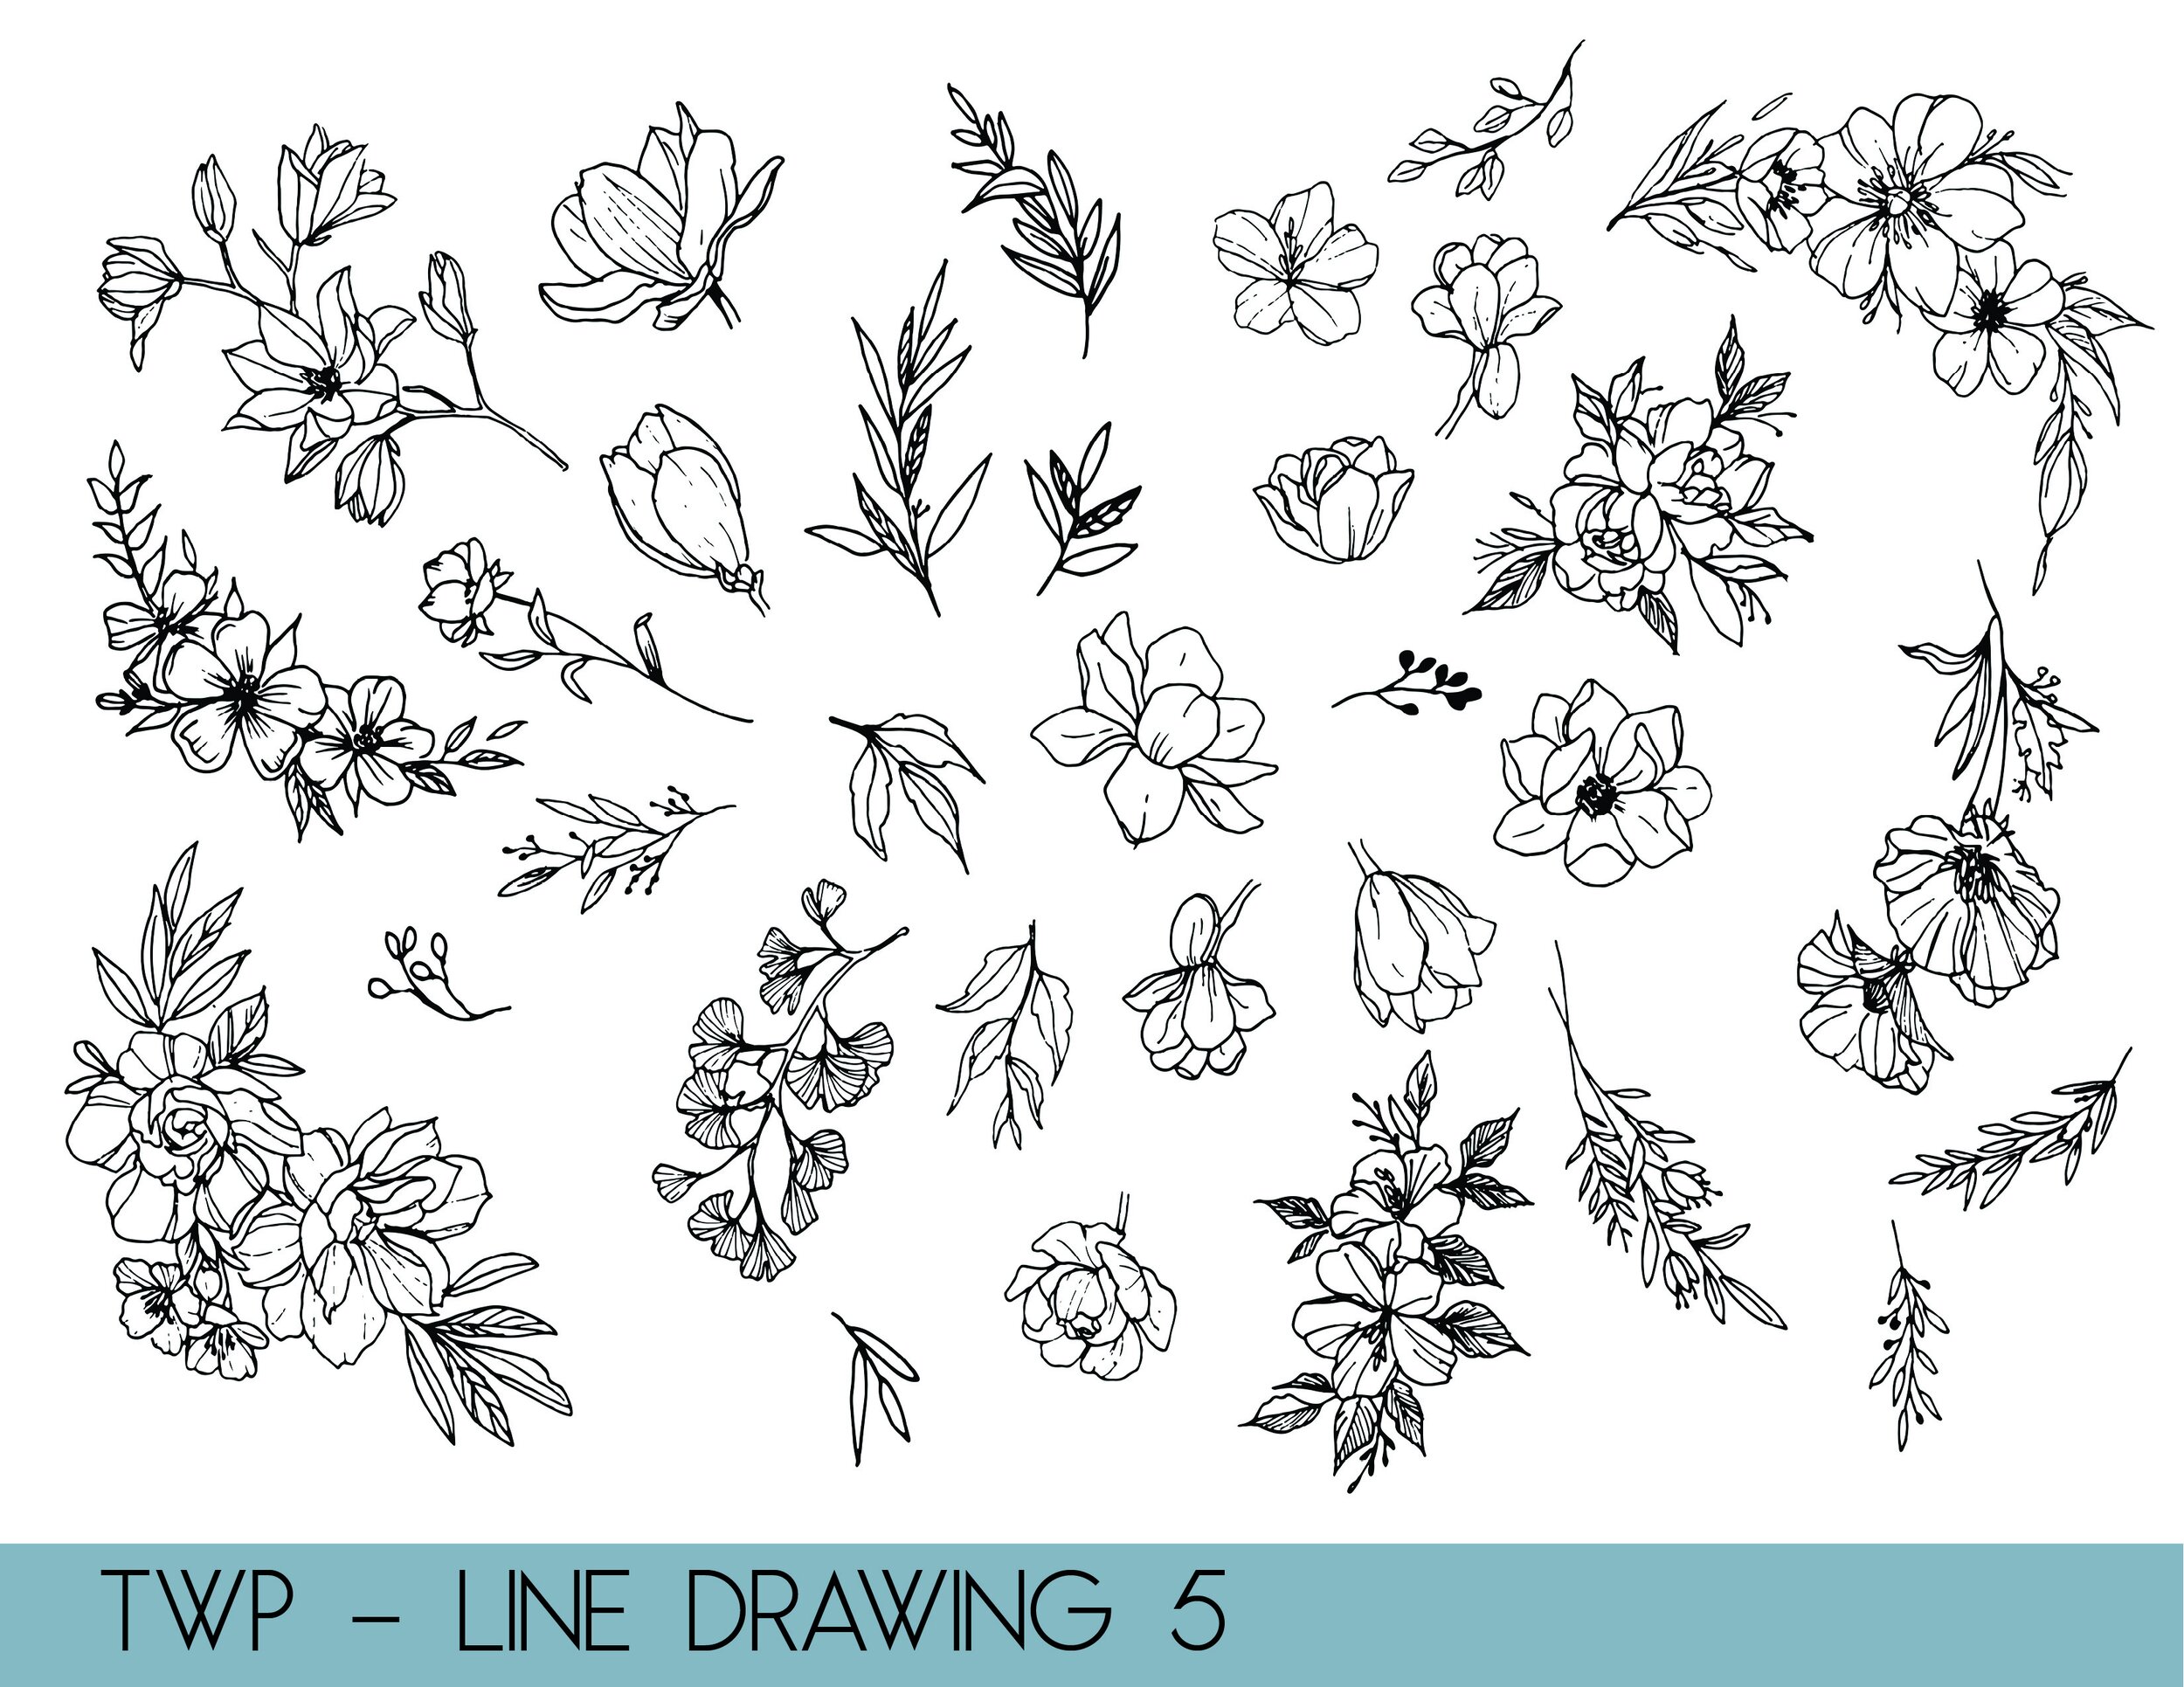 line drawings - website5.jpg